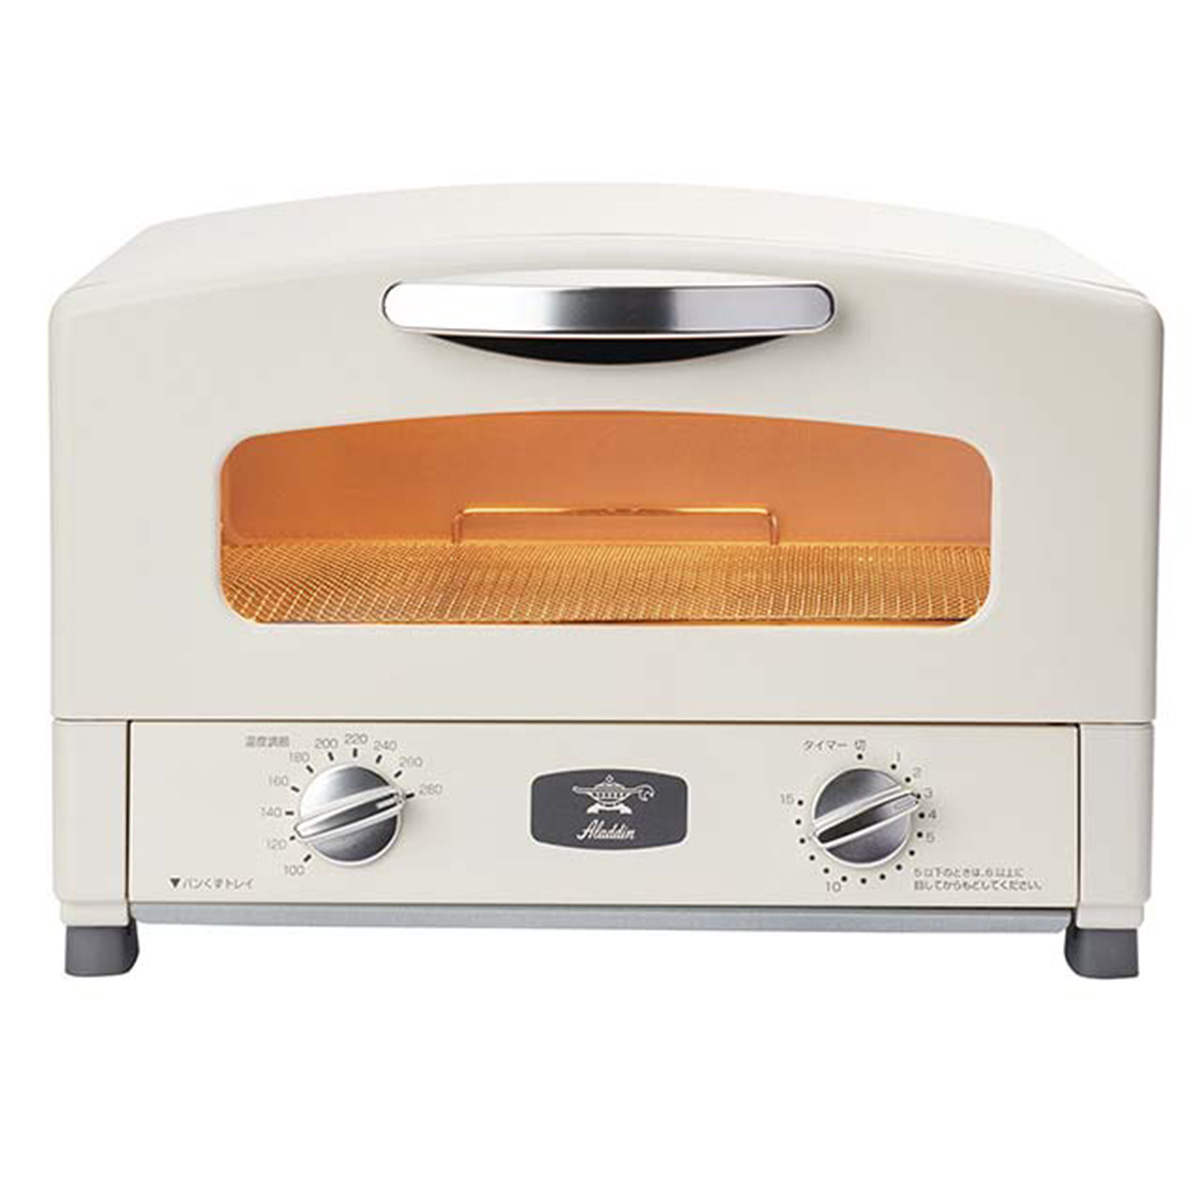 [在庫限り]アラジン オーブントースター グラファイトトースター 2枚焼き 遠赤グラファイトヒーター搭載 パン焼き 食パン 山形パン 一人暮らし 新生活 おしゃれ ホワイト